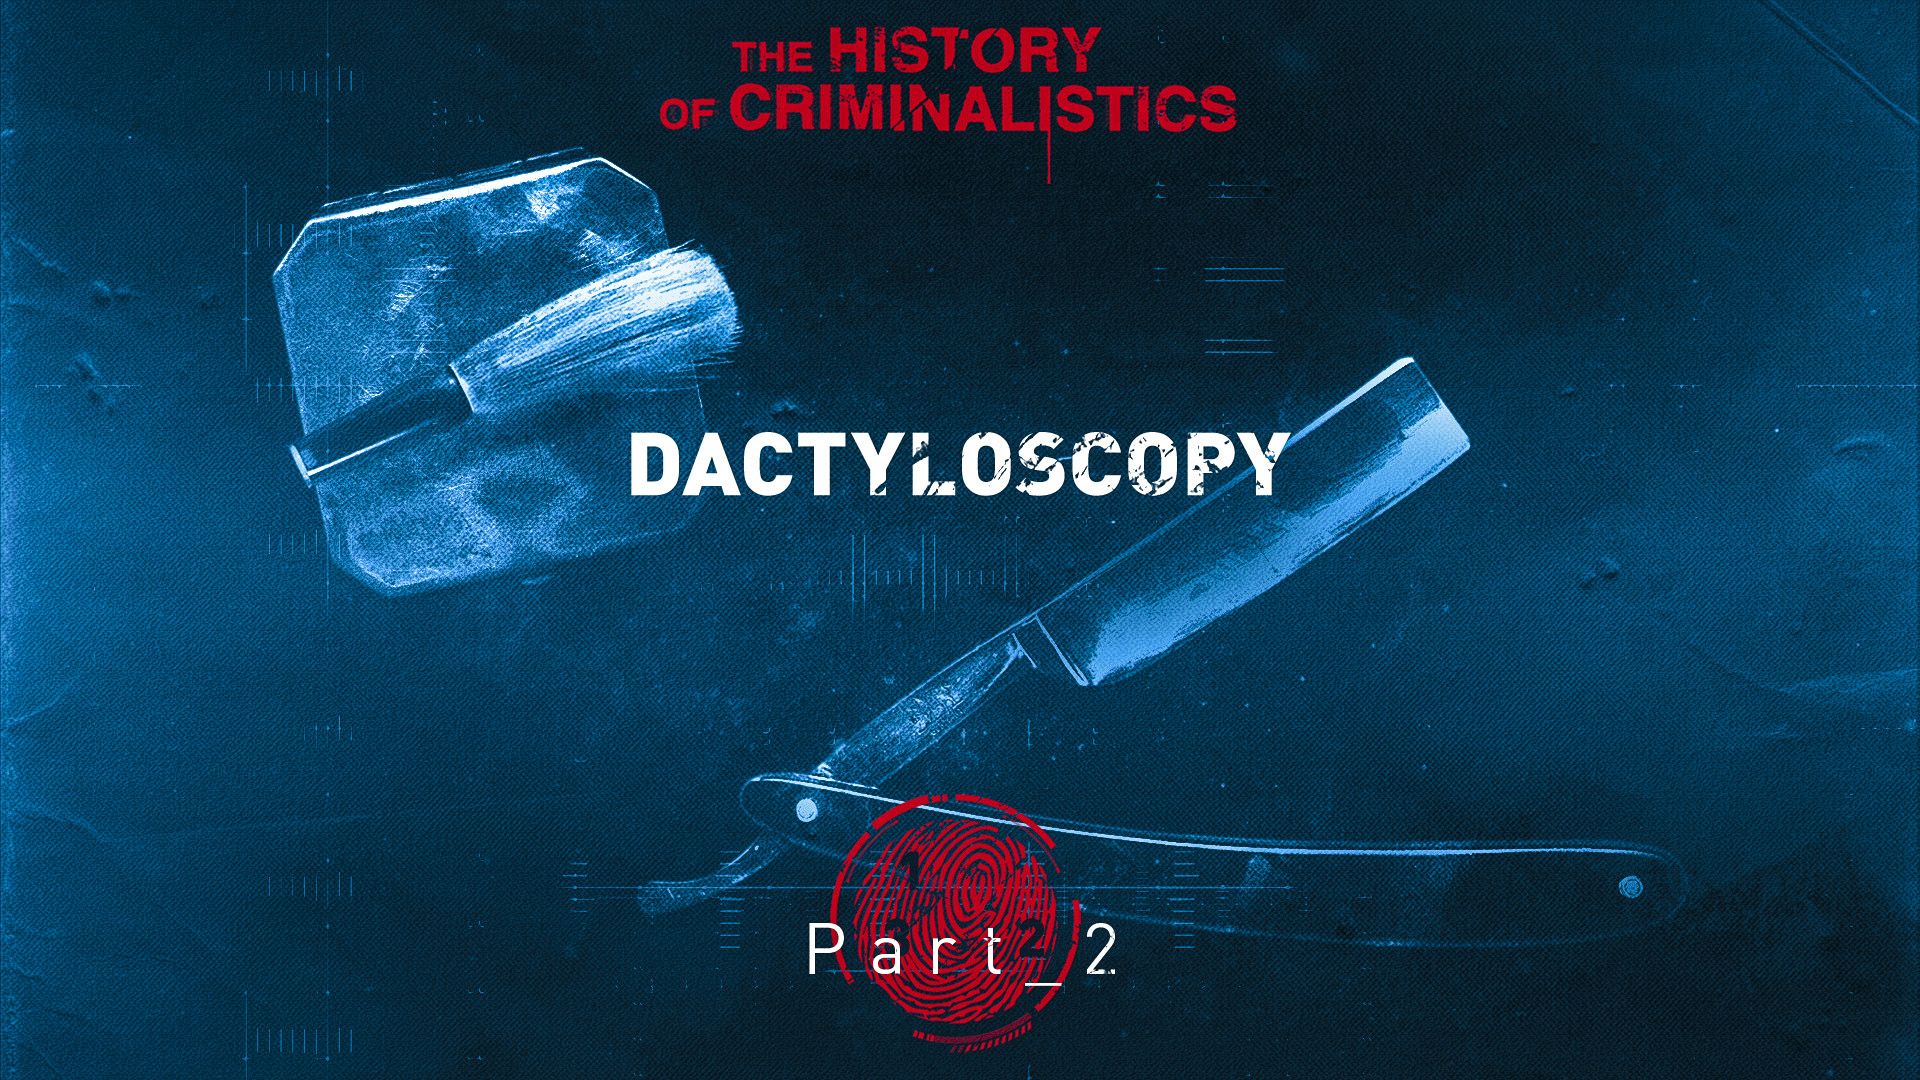 The History of Criminalistics. Dactyloscopy